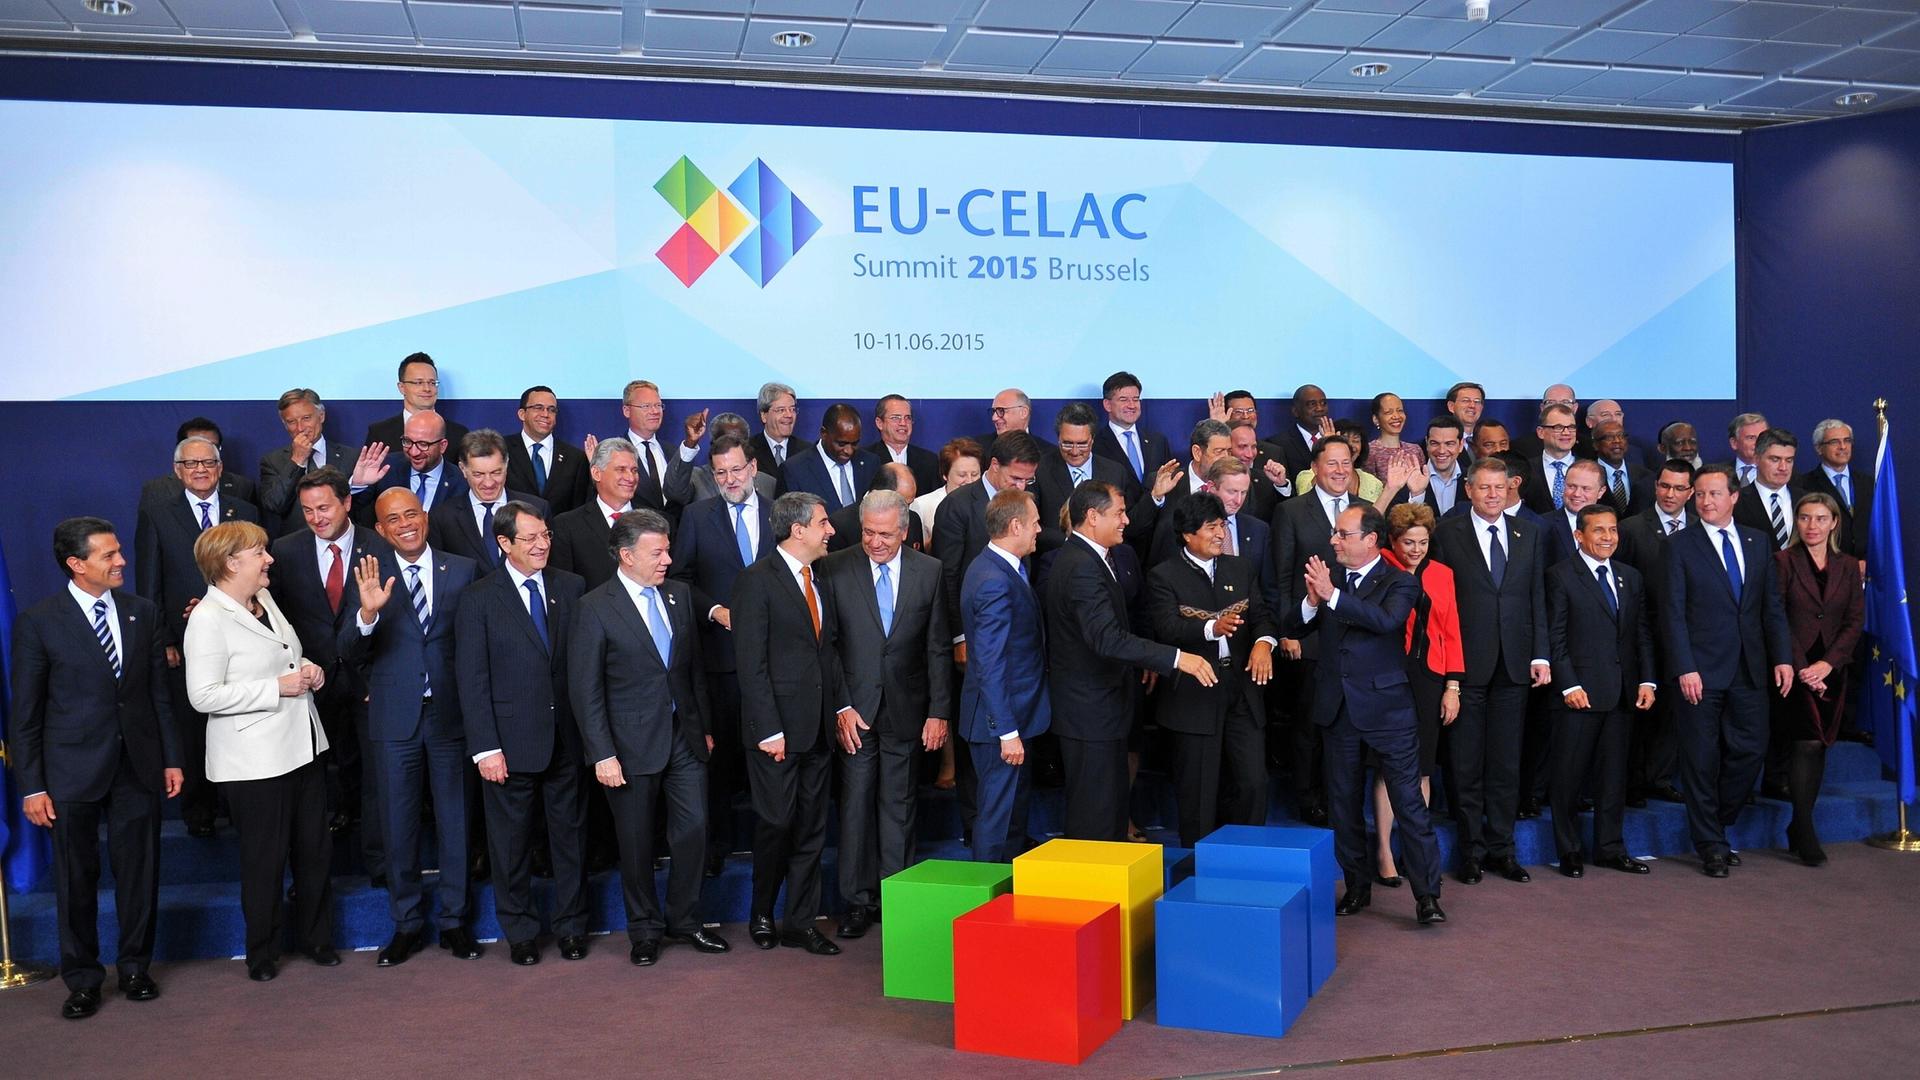 Die Staats- und Regierunsgchefs der EU und der CELAC-Länder bei einem Gruppenbild.